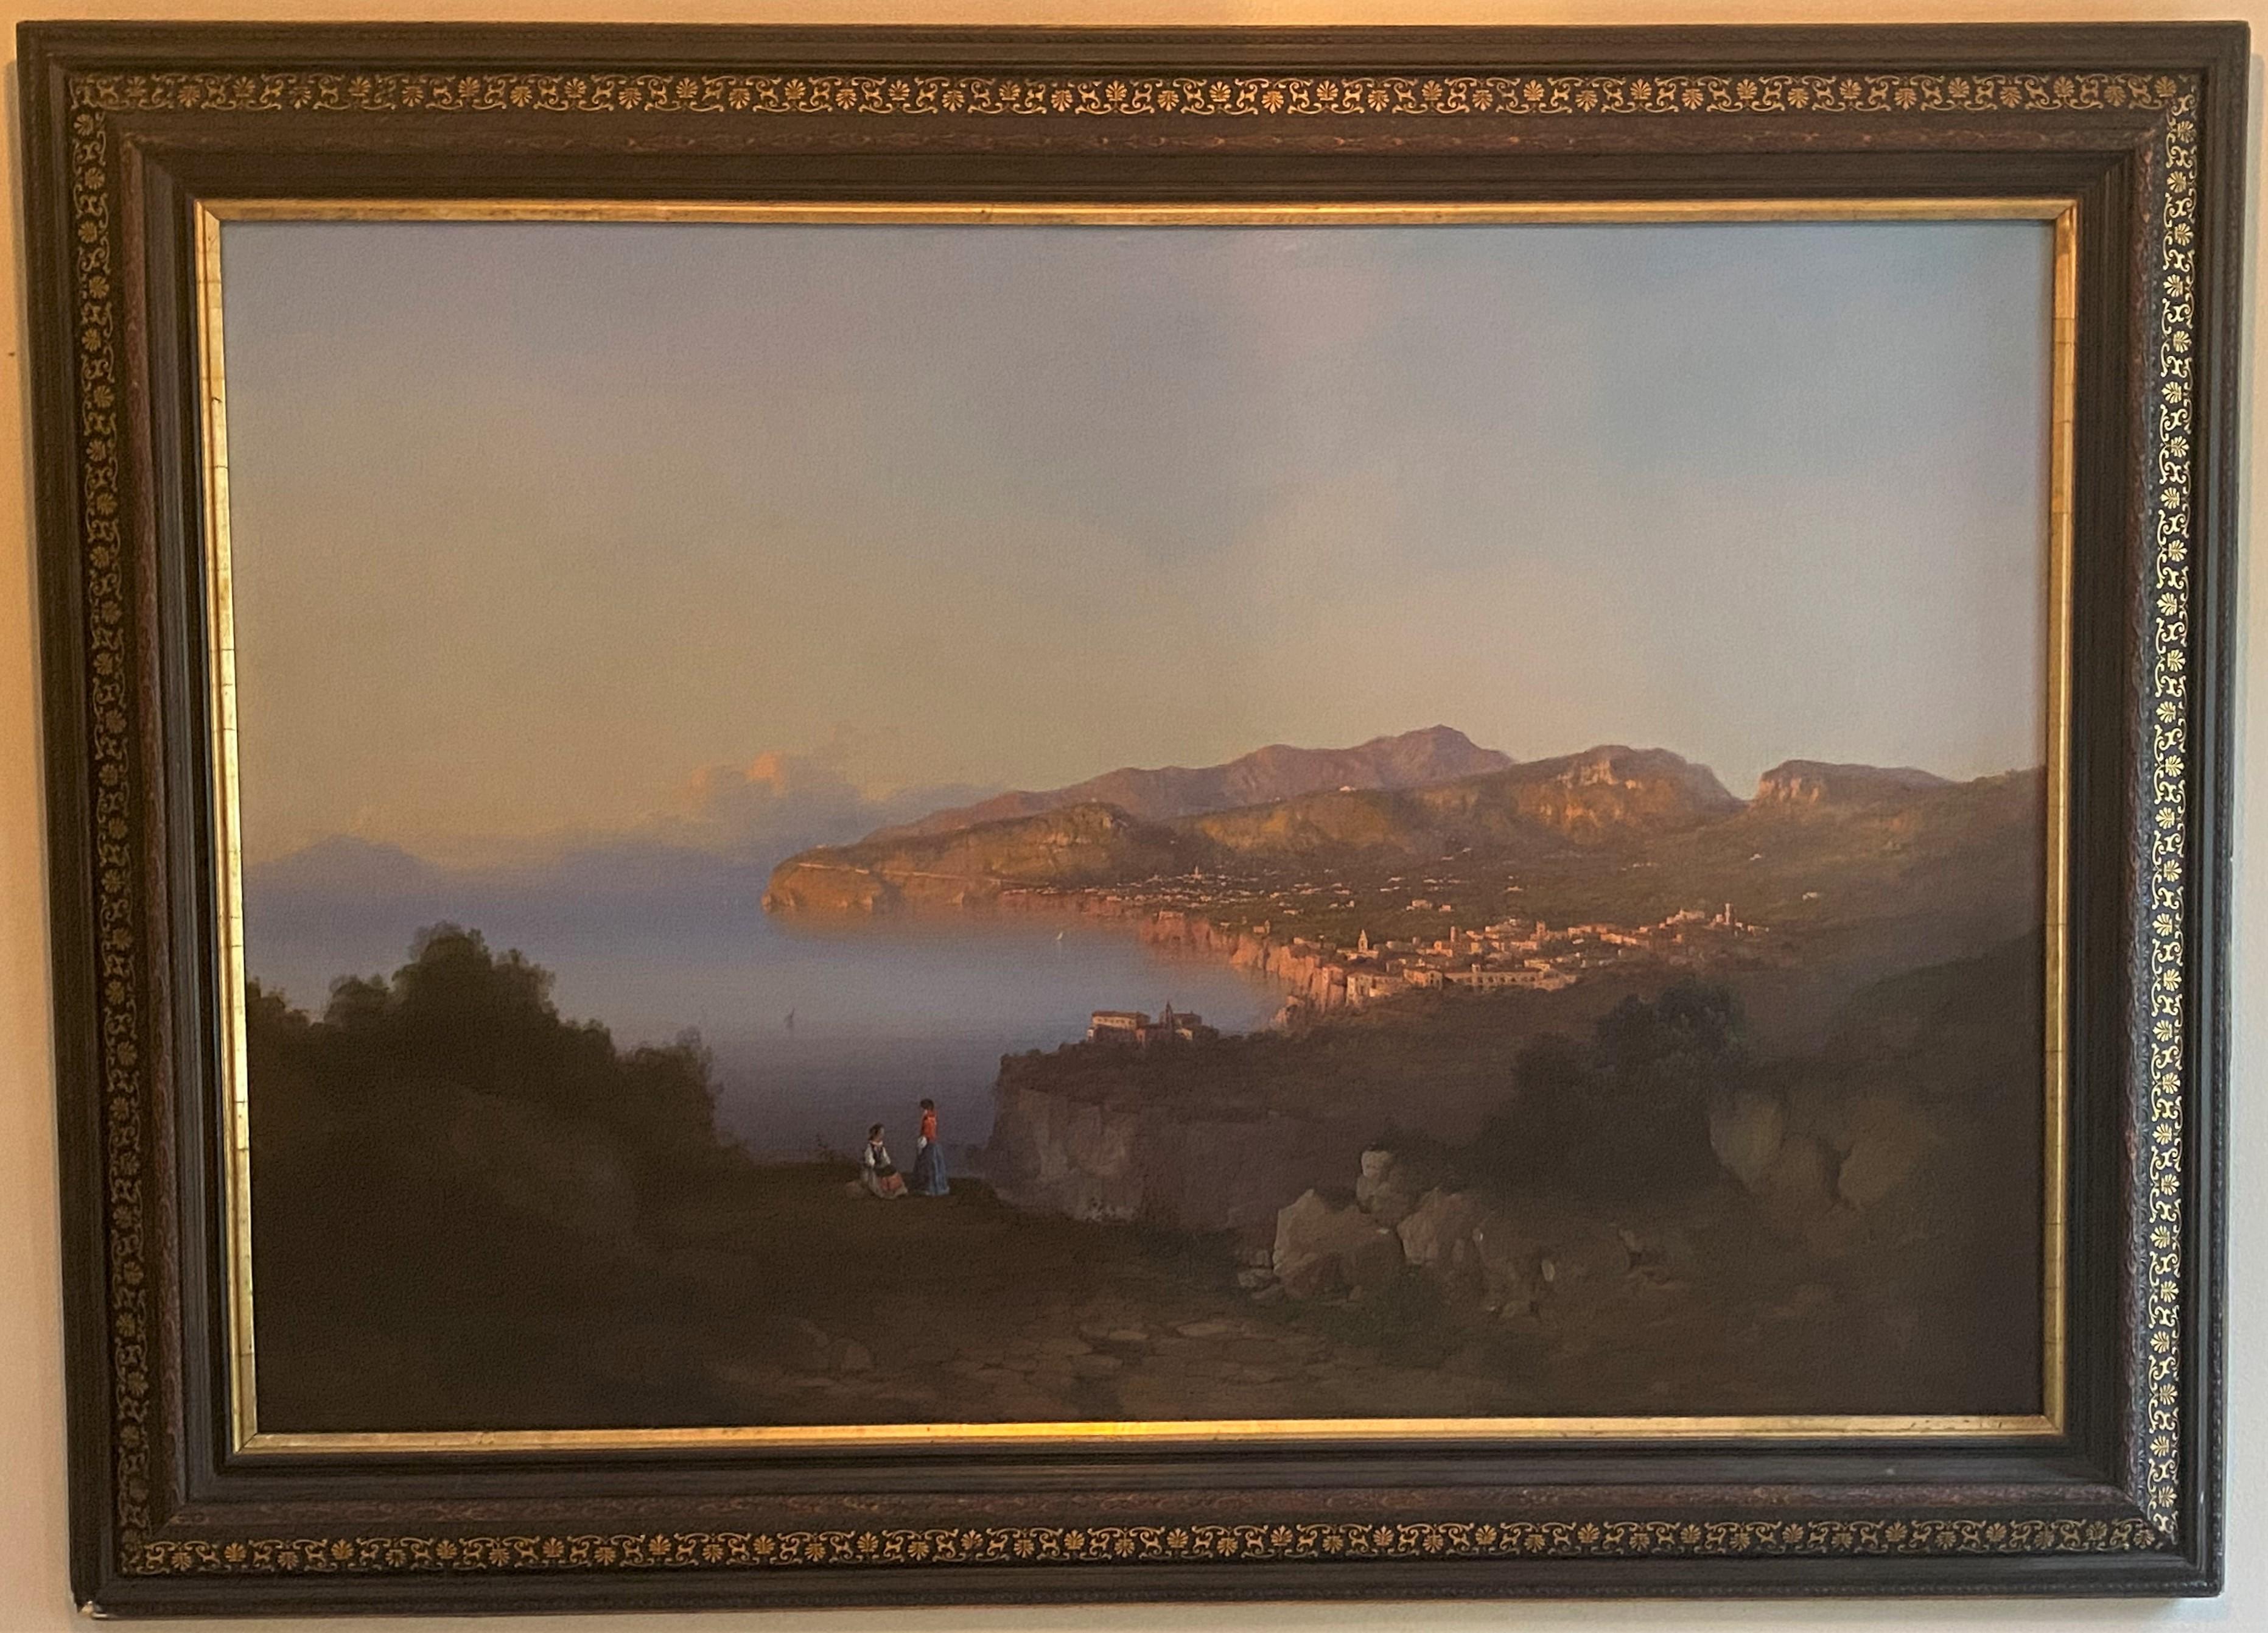 Parnoramische Ansicht der italienischen Schule von Sorrent, beschriftet und datiert 1855 – Painting von Unknown